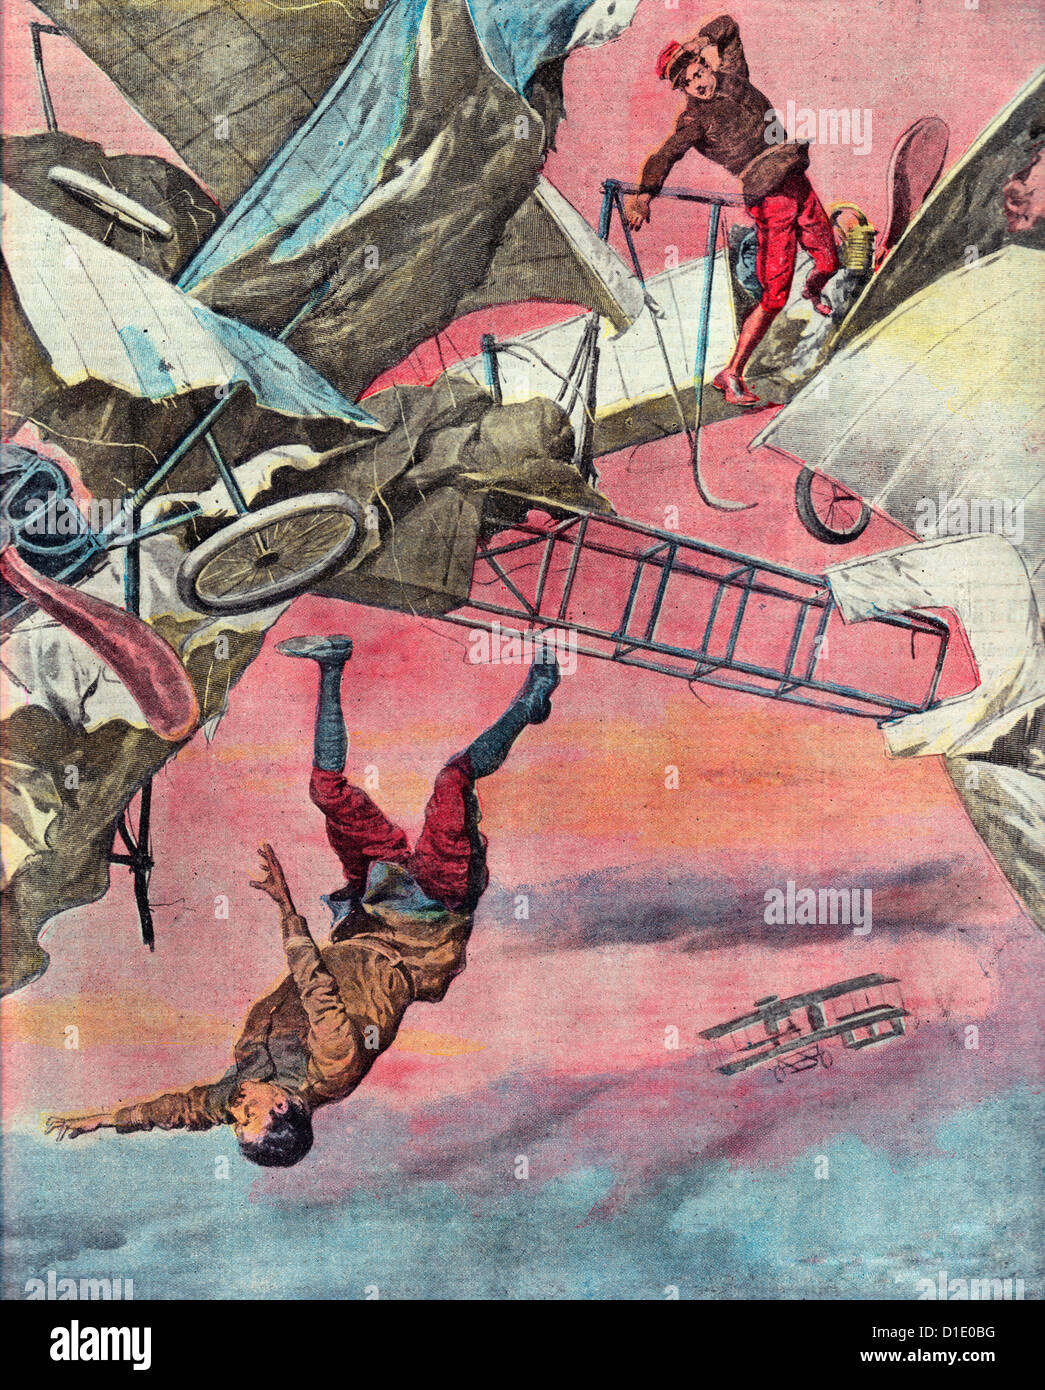 Les tragédies de l'air : mortel accident de deux avions militaires français, vers 1912 Banque D'Images